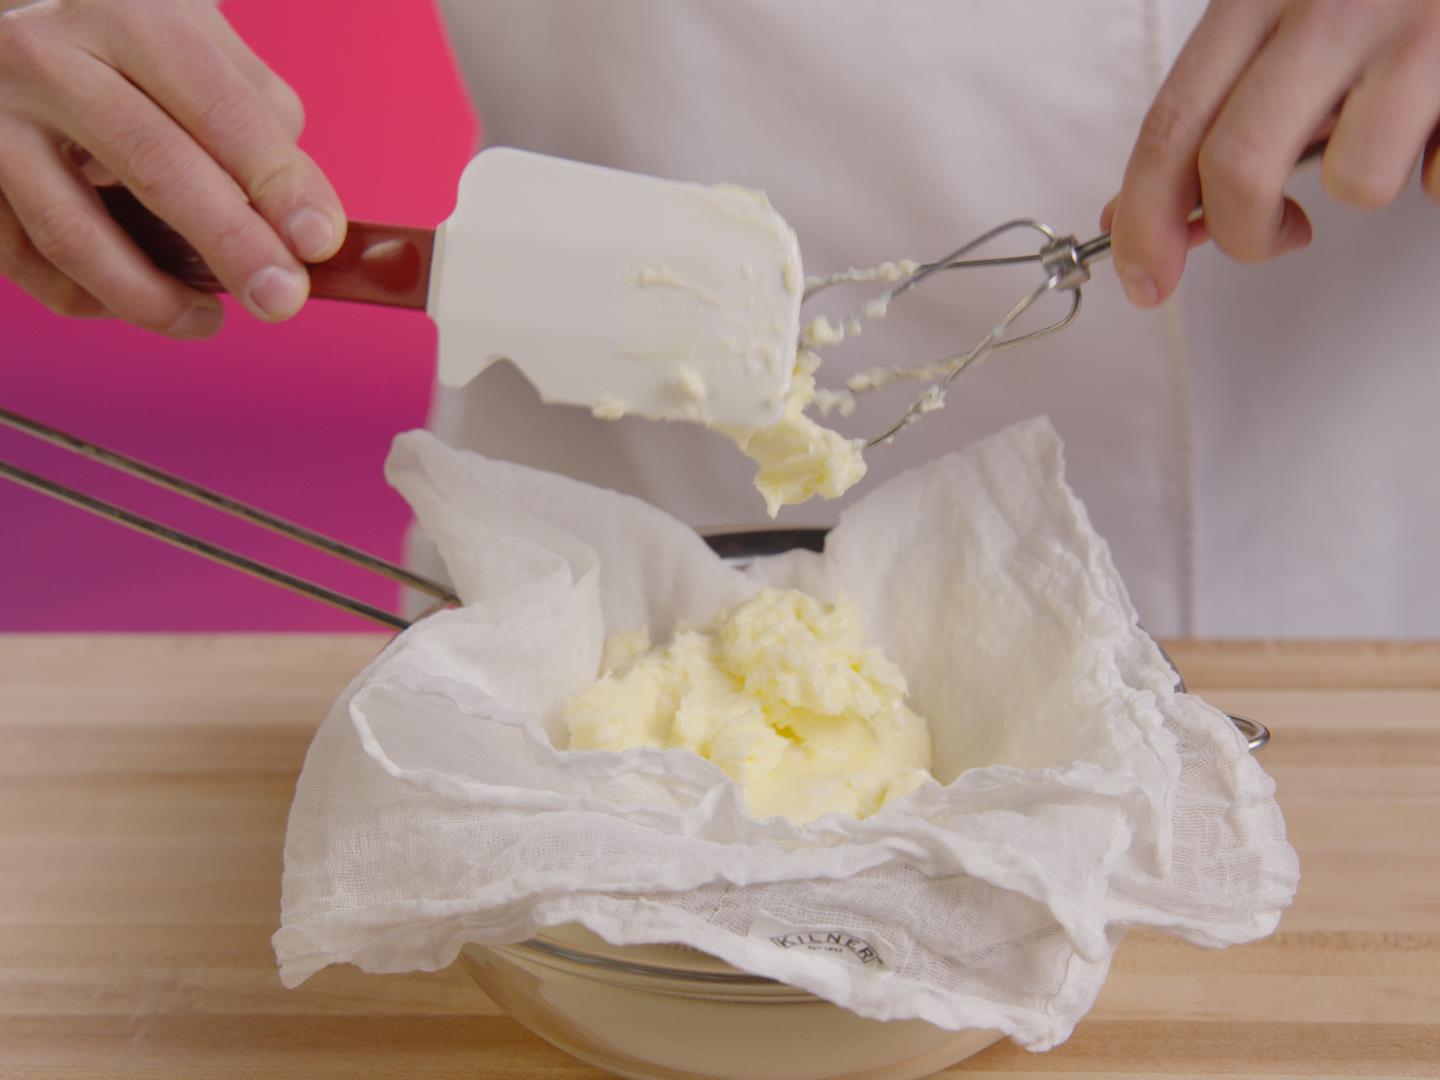 Comment faire son beurre maison